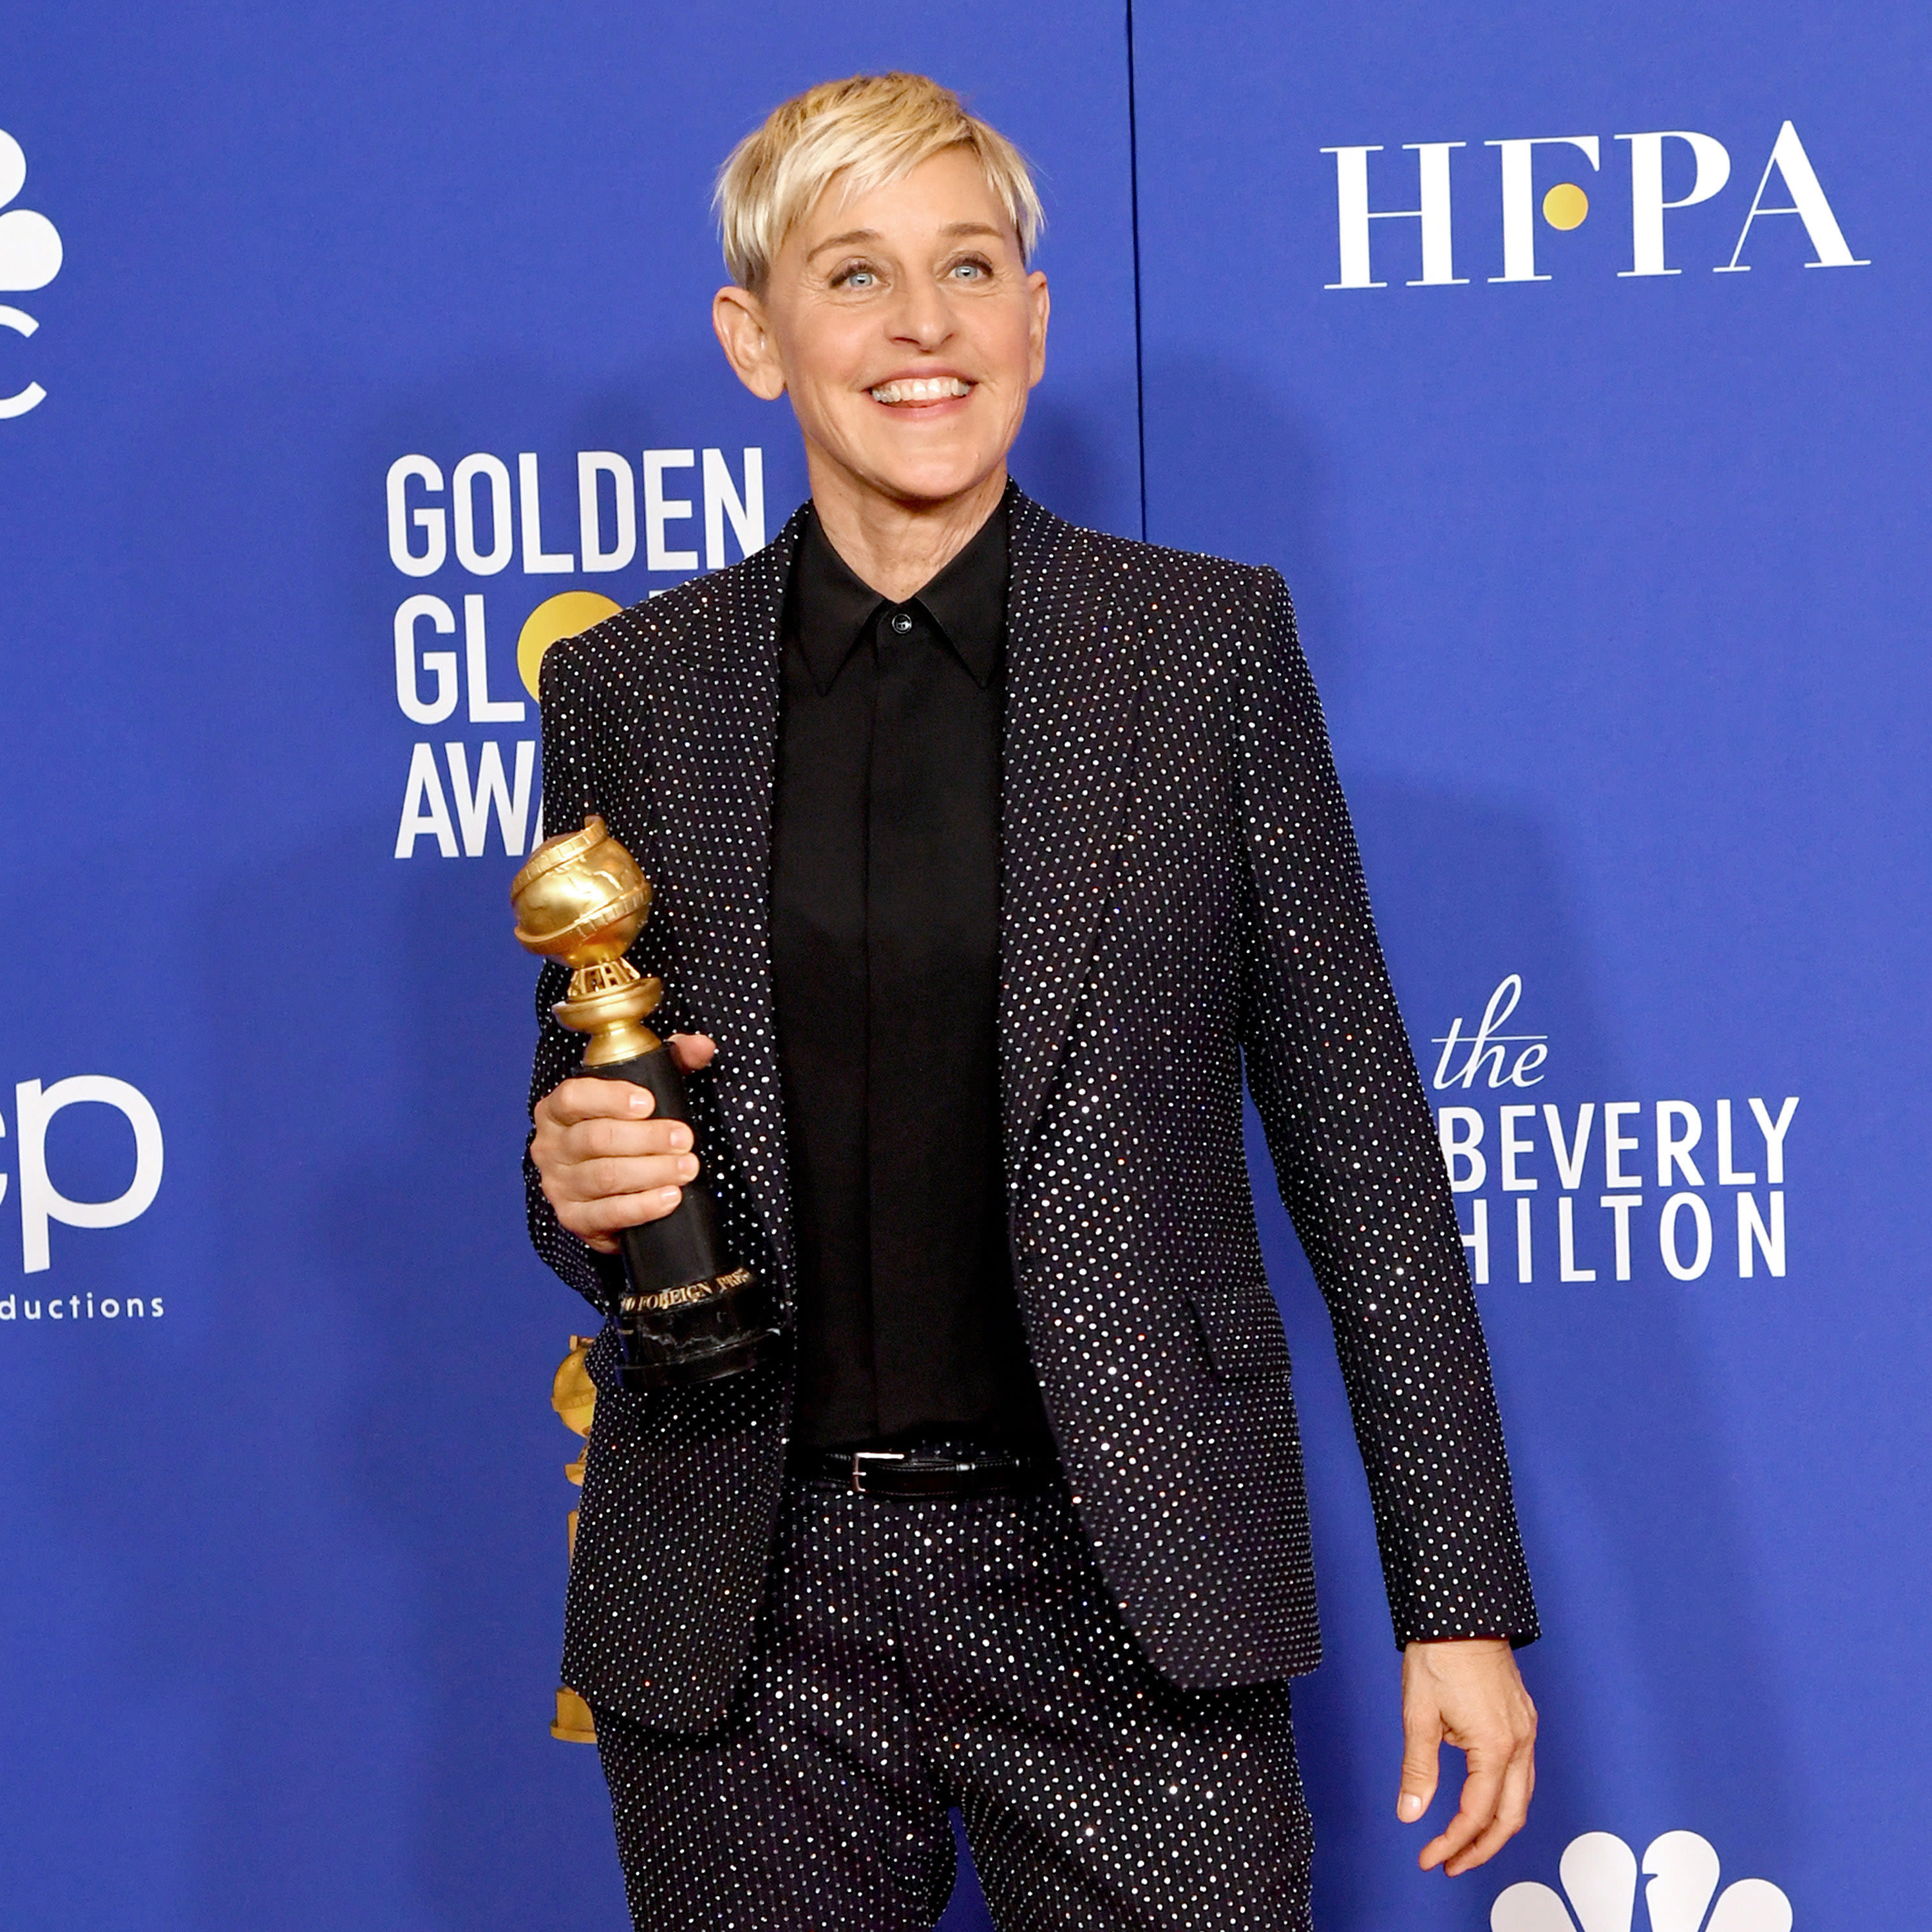 Ellen DeGeneres announces ‘final’ stand-up tour dates